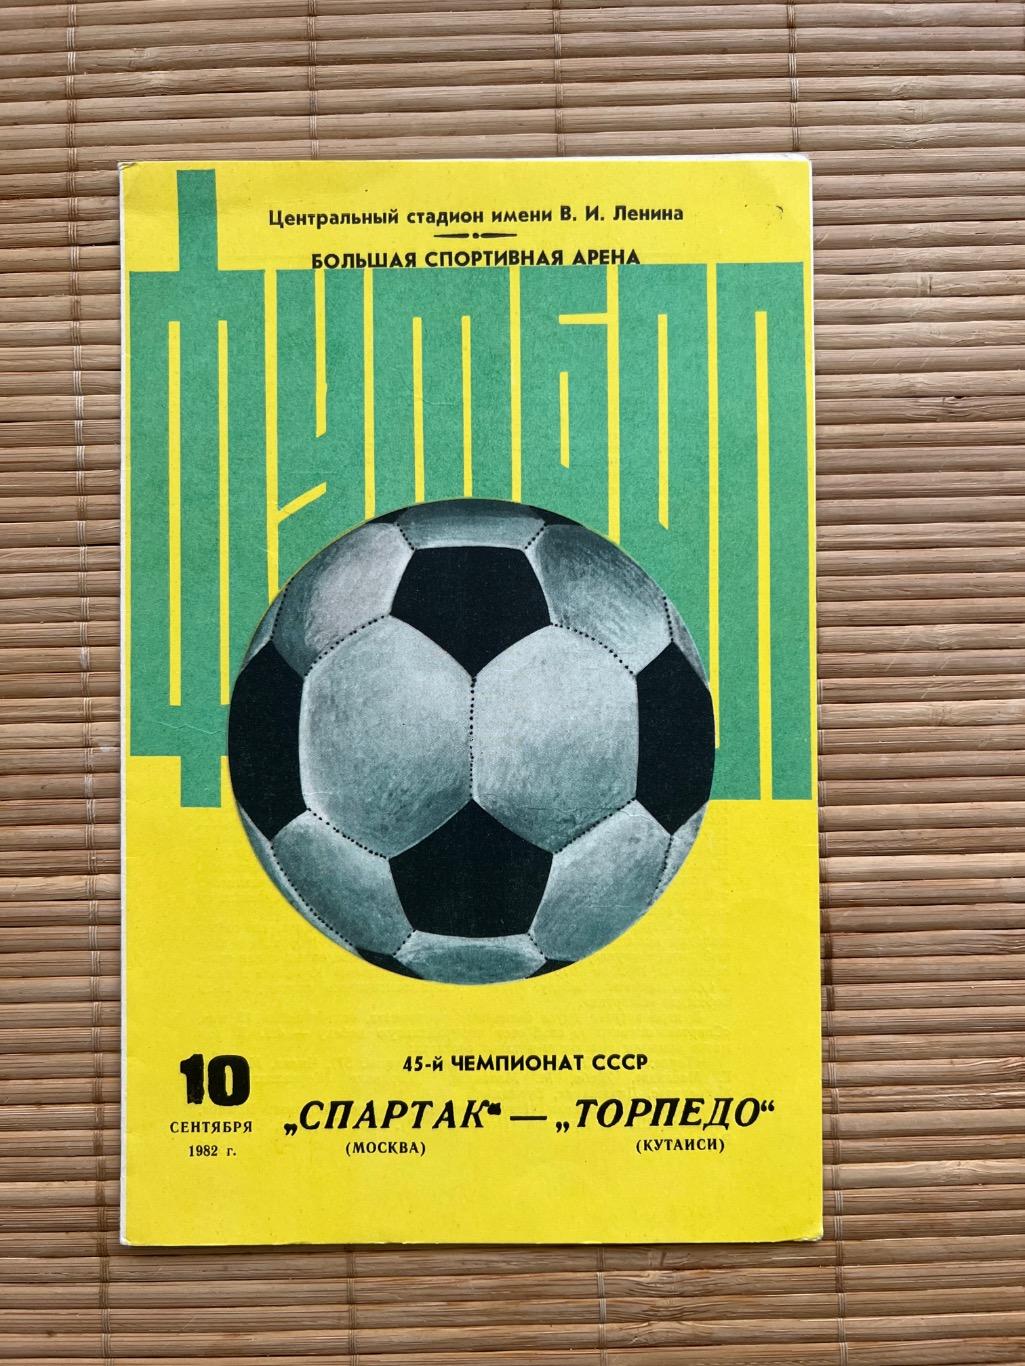 Спартак Москва - торпедо кутаиси. 1982